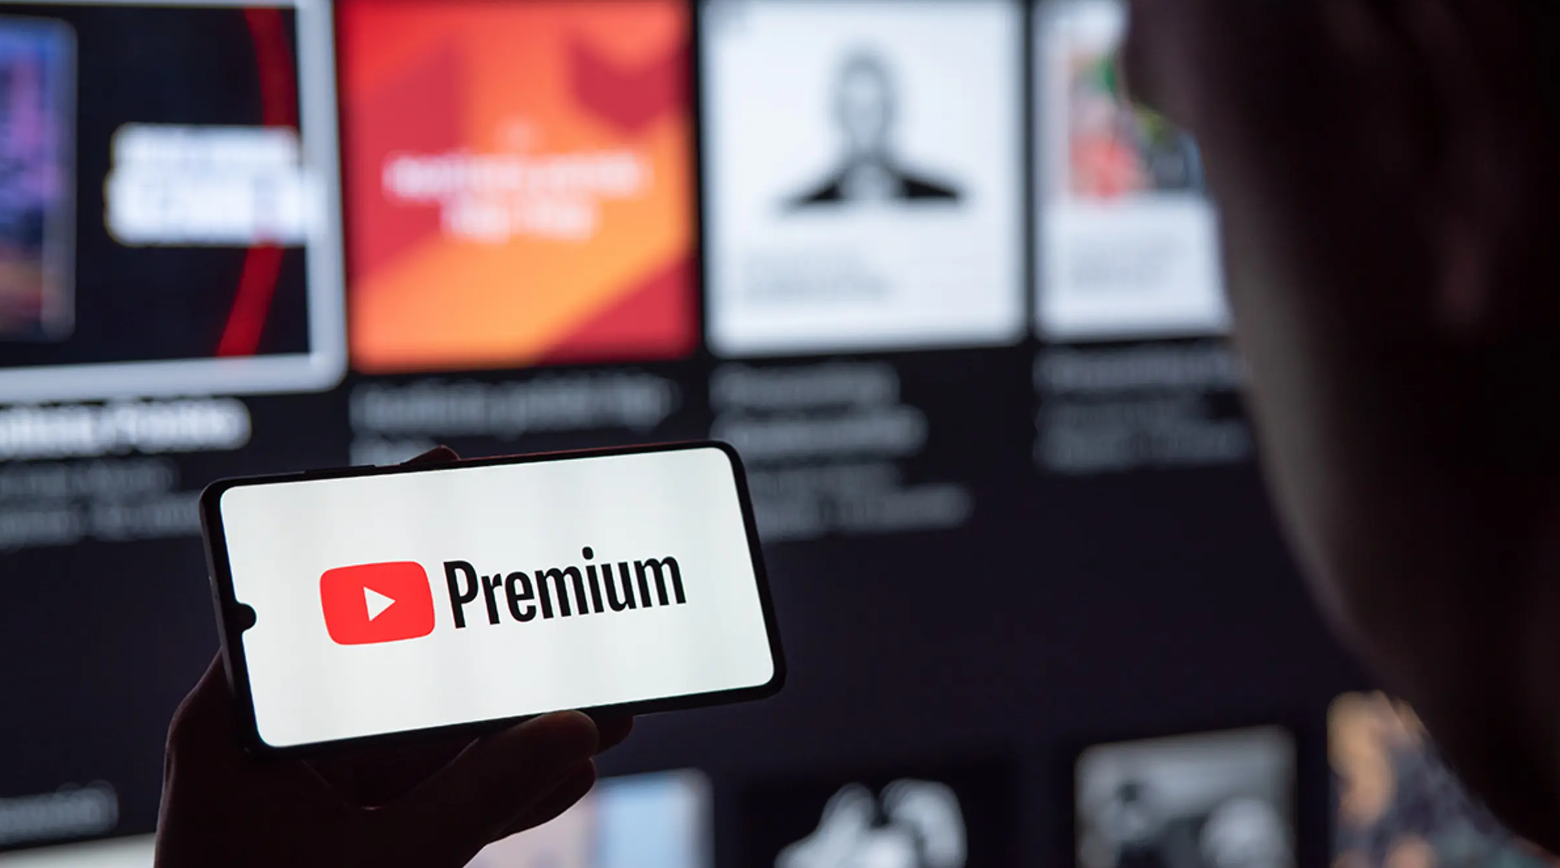 Ở cùng độ phân giải, chất lượng video Youtube của người dùng miễn phí sắp 'không có cửa' để so về độ nét với người dùng trả phí - Ảnh 2.